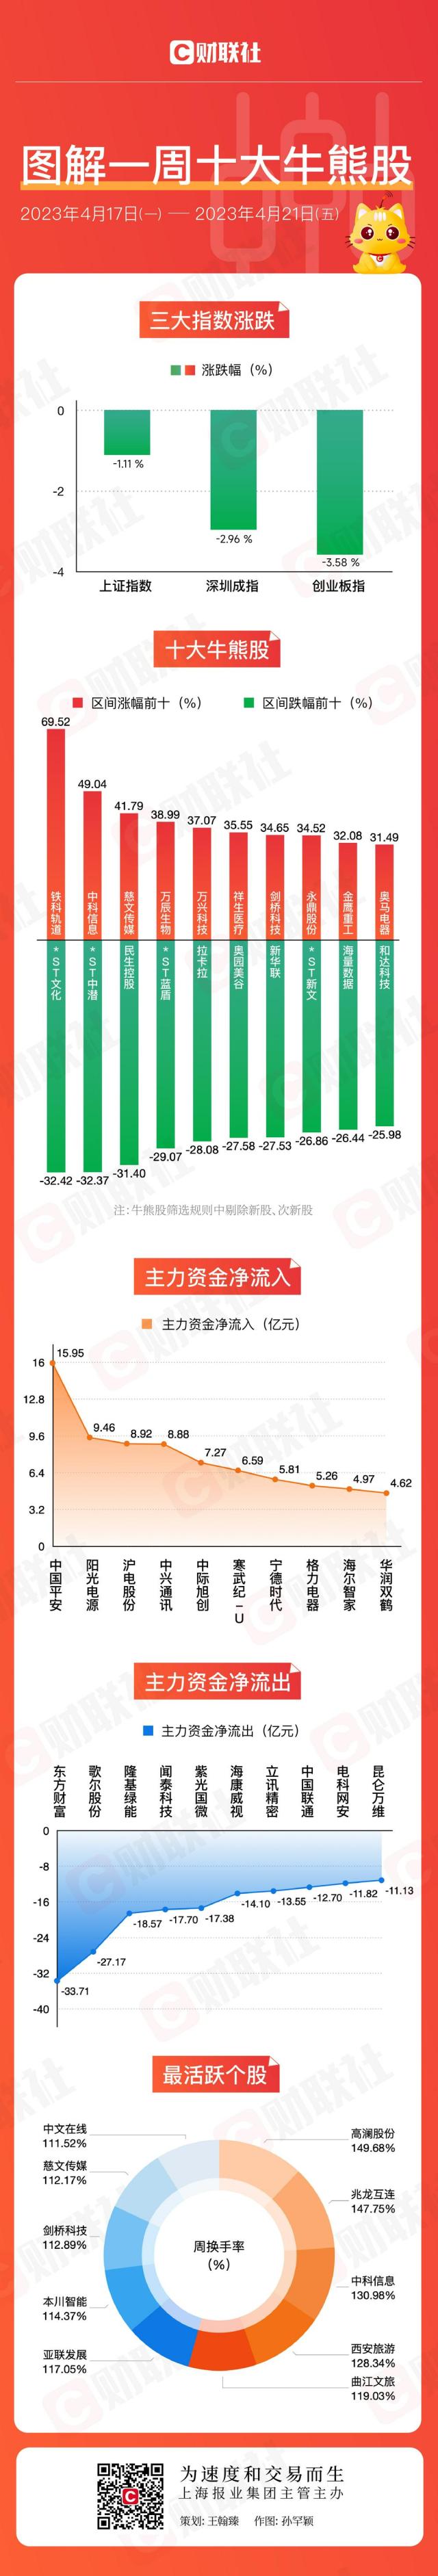 多只业绩大增(zēng)股股价飙涨 主力甩卖科技龙头